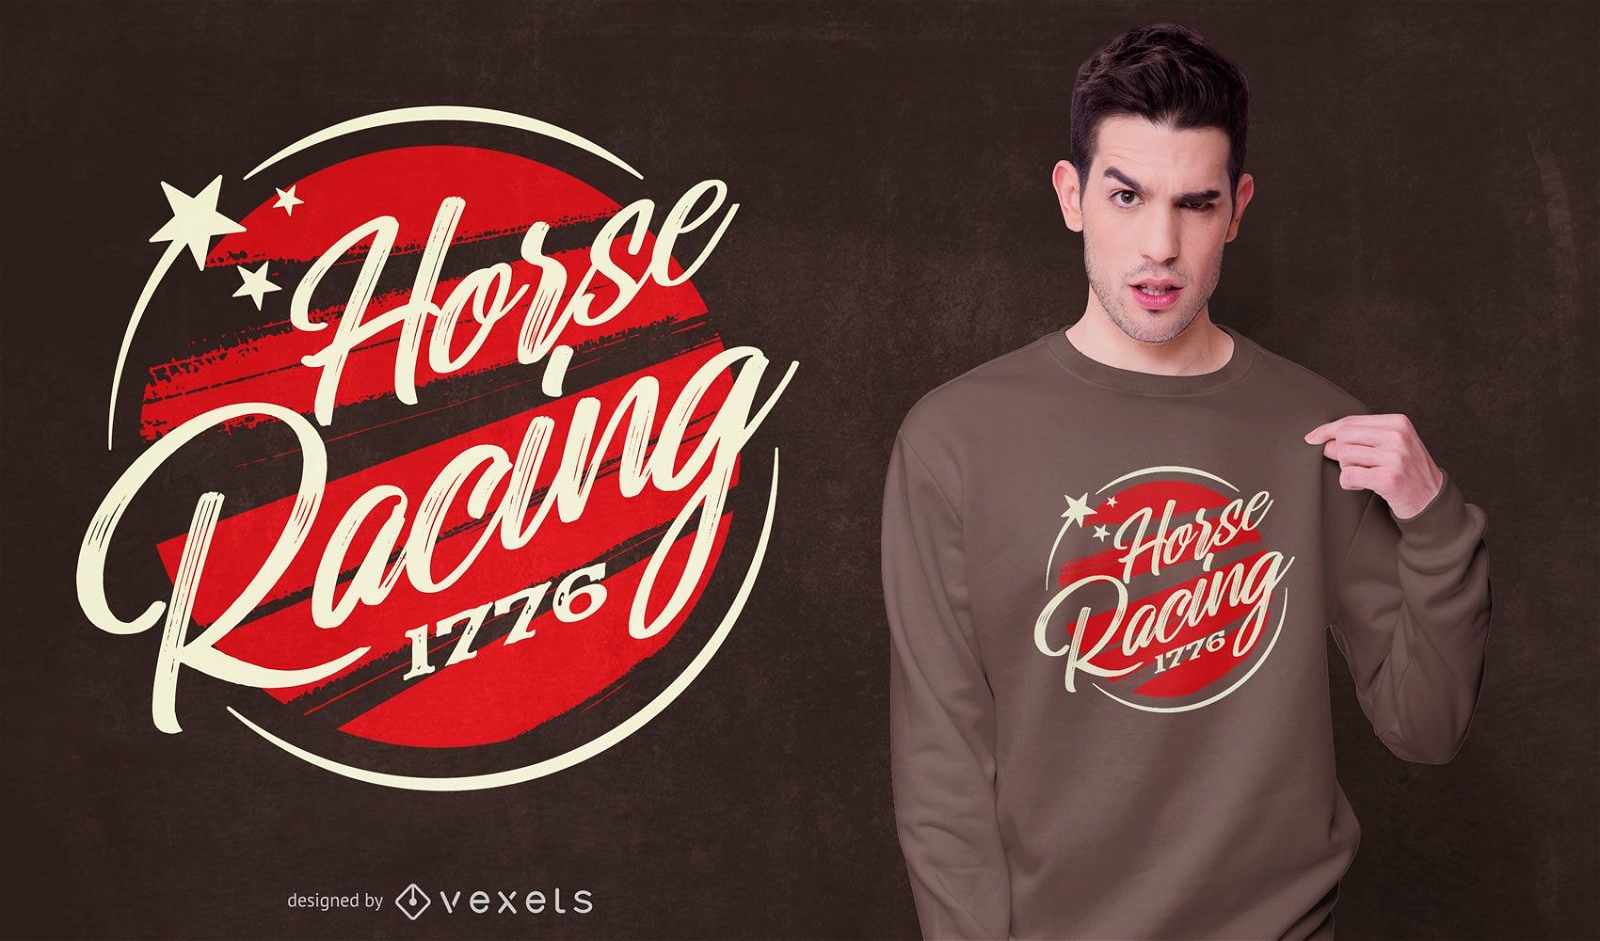 Horse racing t-shirt design